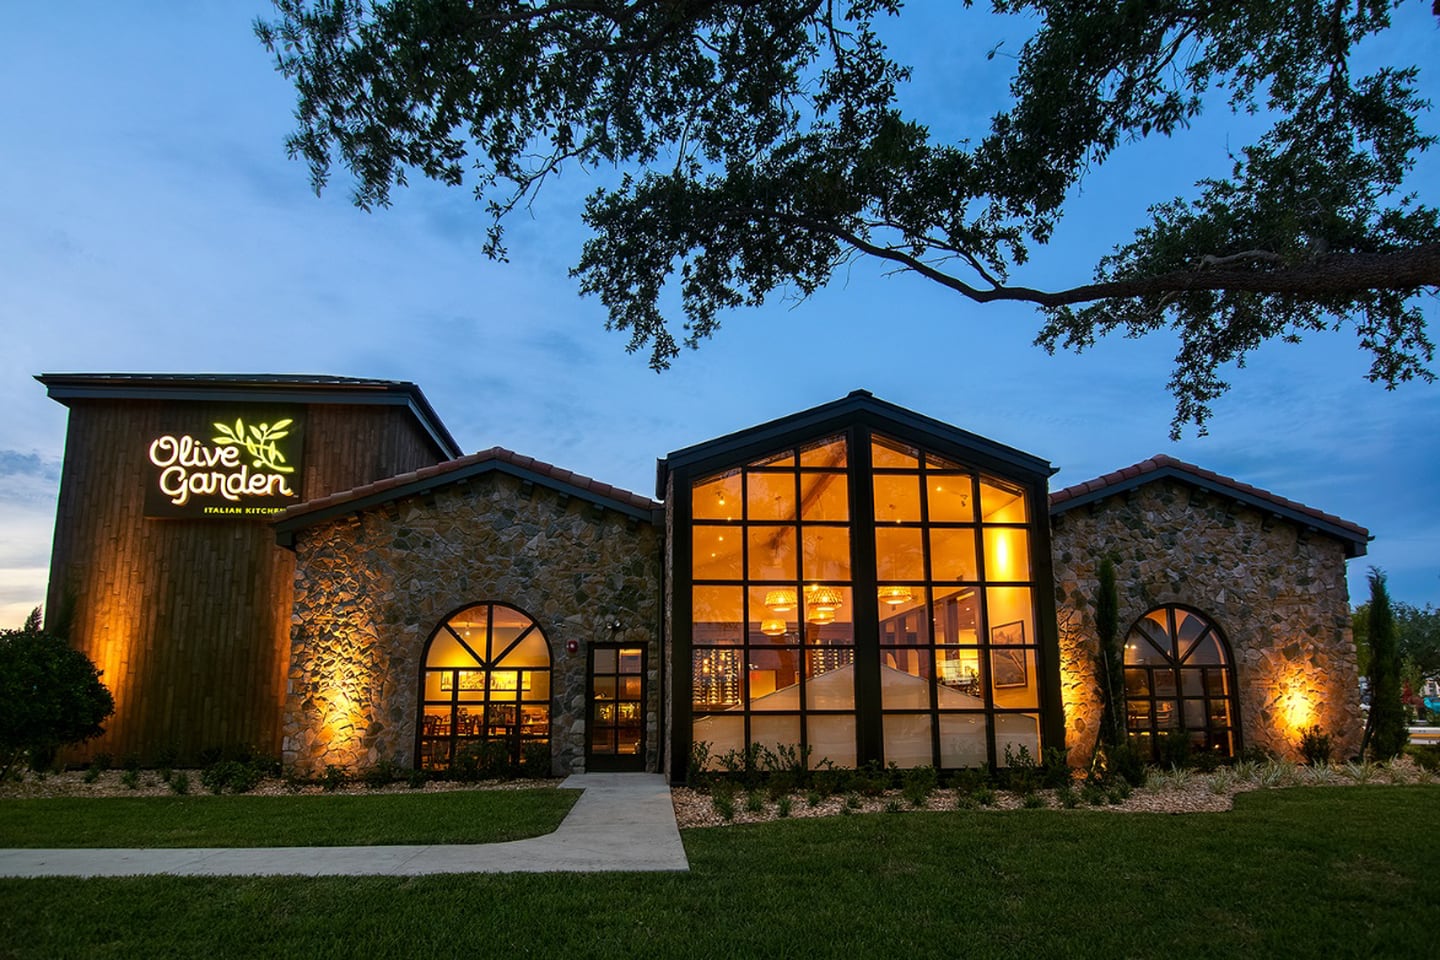 La cadena de restaurantes Olive Garden, especializada en comida italiana, abrirá tres locales en el país cuya inversión ascenderá a $3,9 millones. Foto: Cortesía Olive Garden.